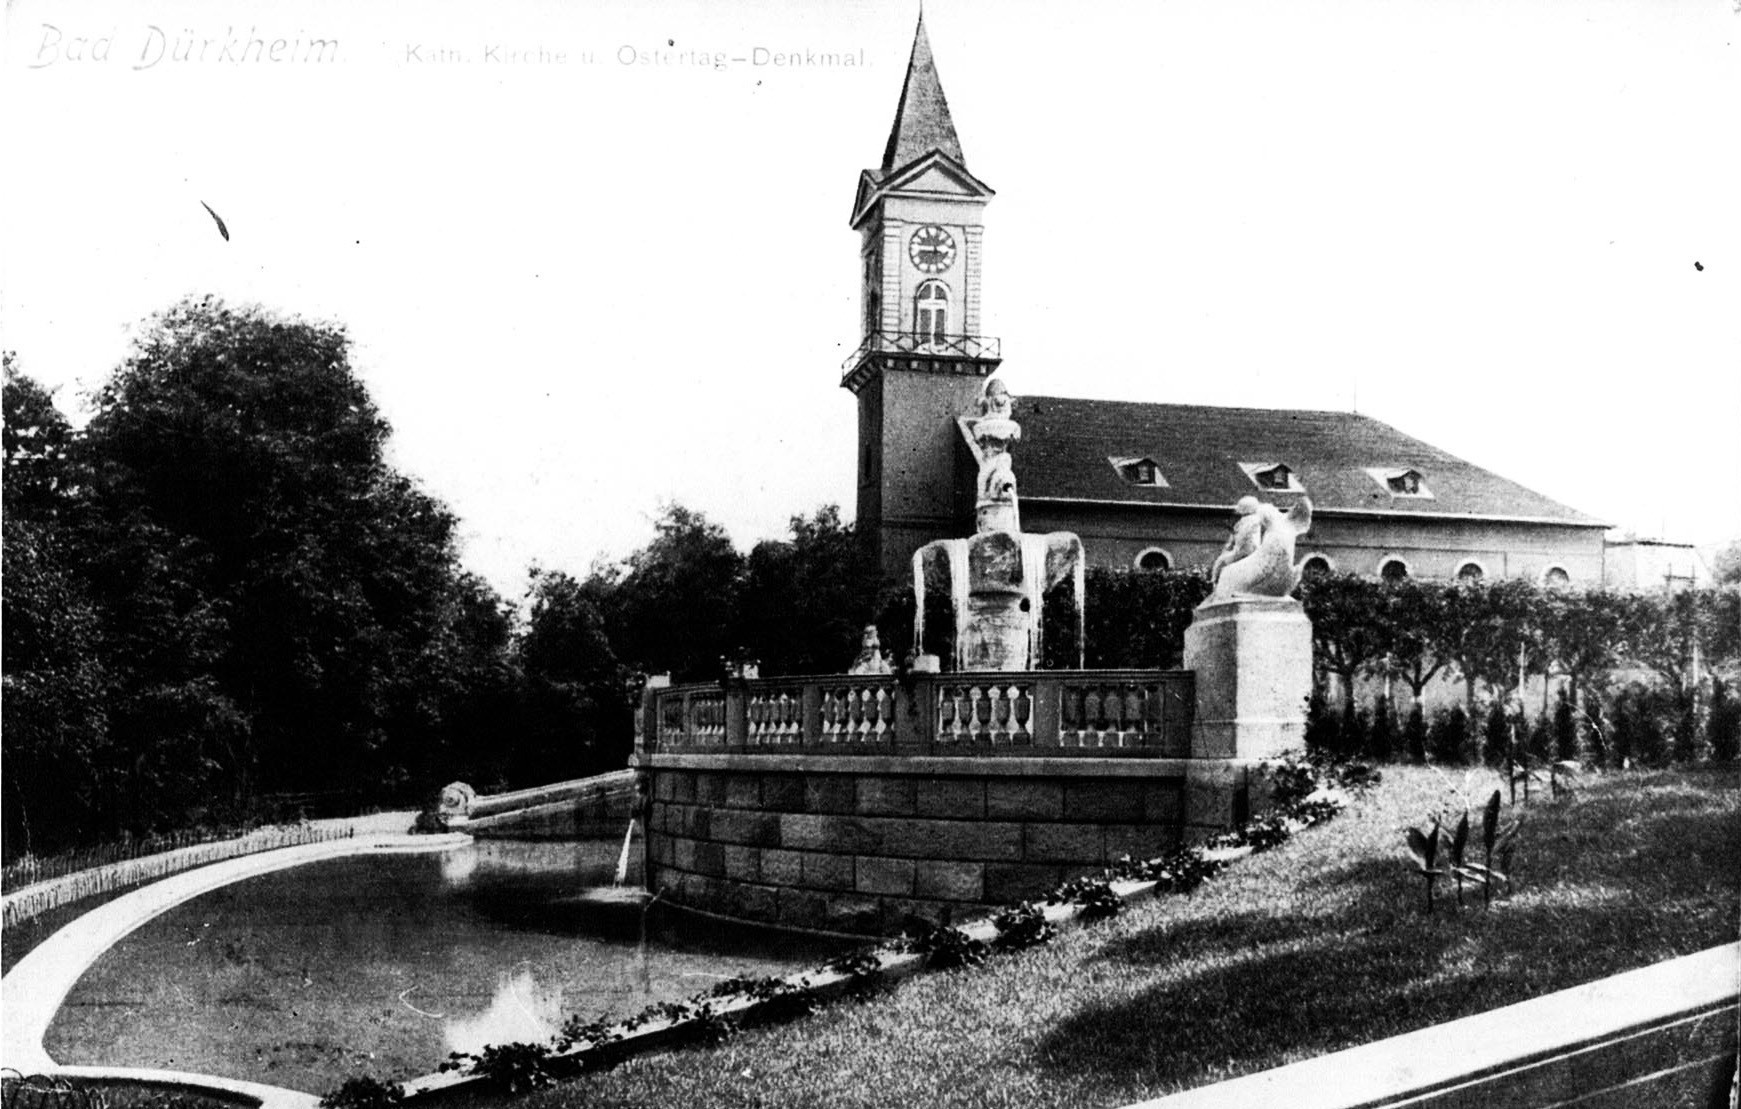 Foto-Sammlung Adolf Krapp, Ordner 14: Kur-Park, 1914 (Museumsgesellschaft Bad Dürkheim e.V. CC BY-NC-SA)